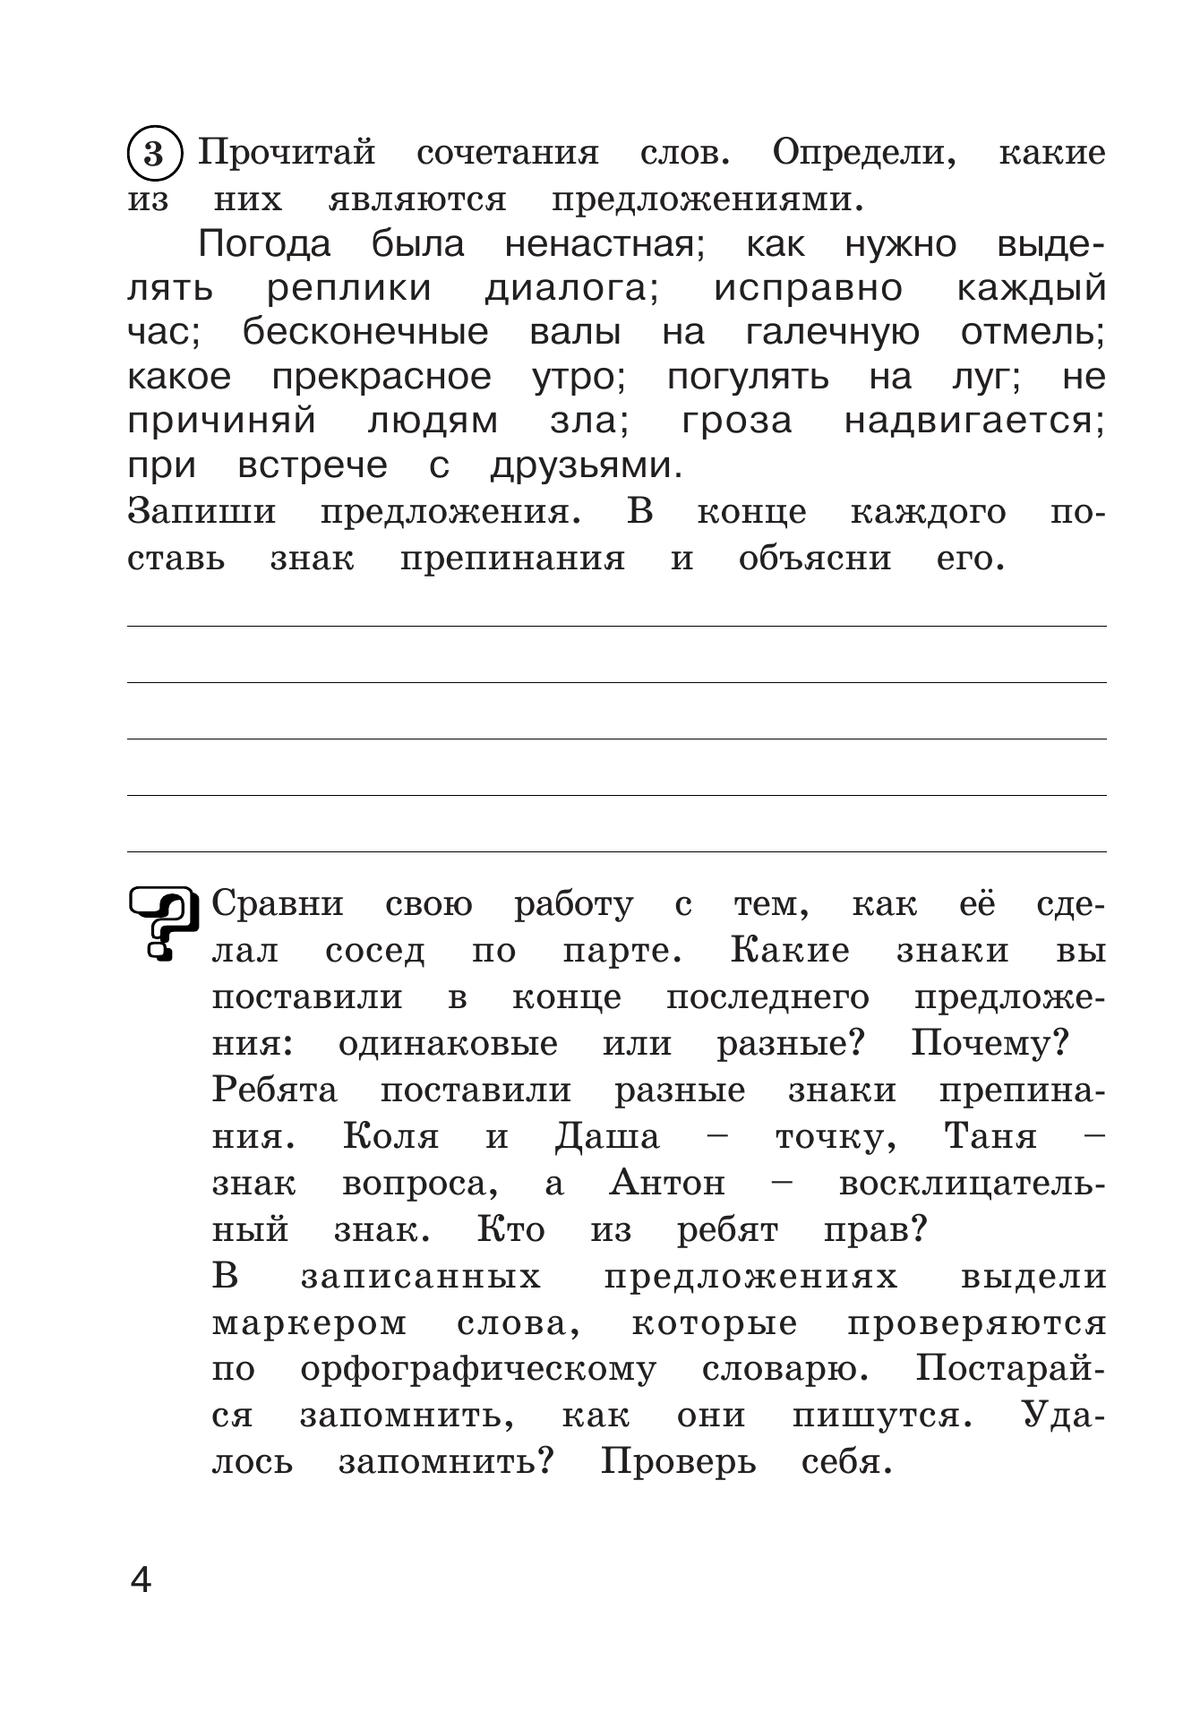 Рабочая тетрадь по русскому языку. 3 класс. В 2 частях. Часть 2 3